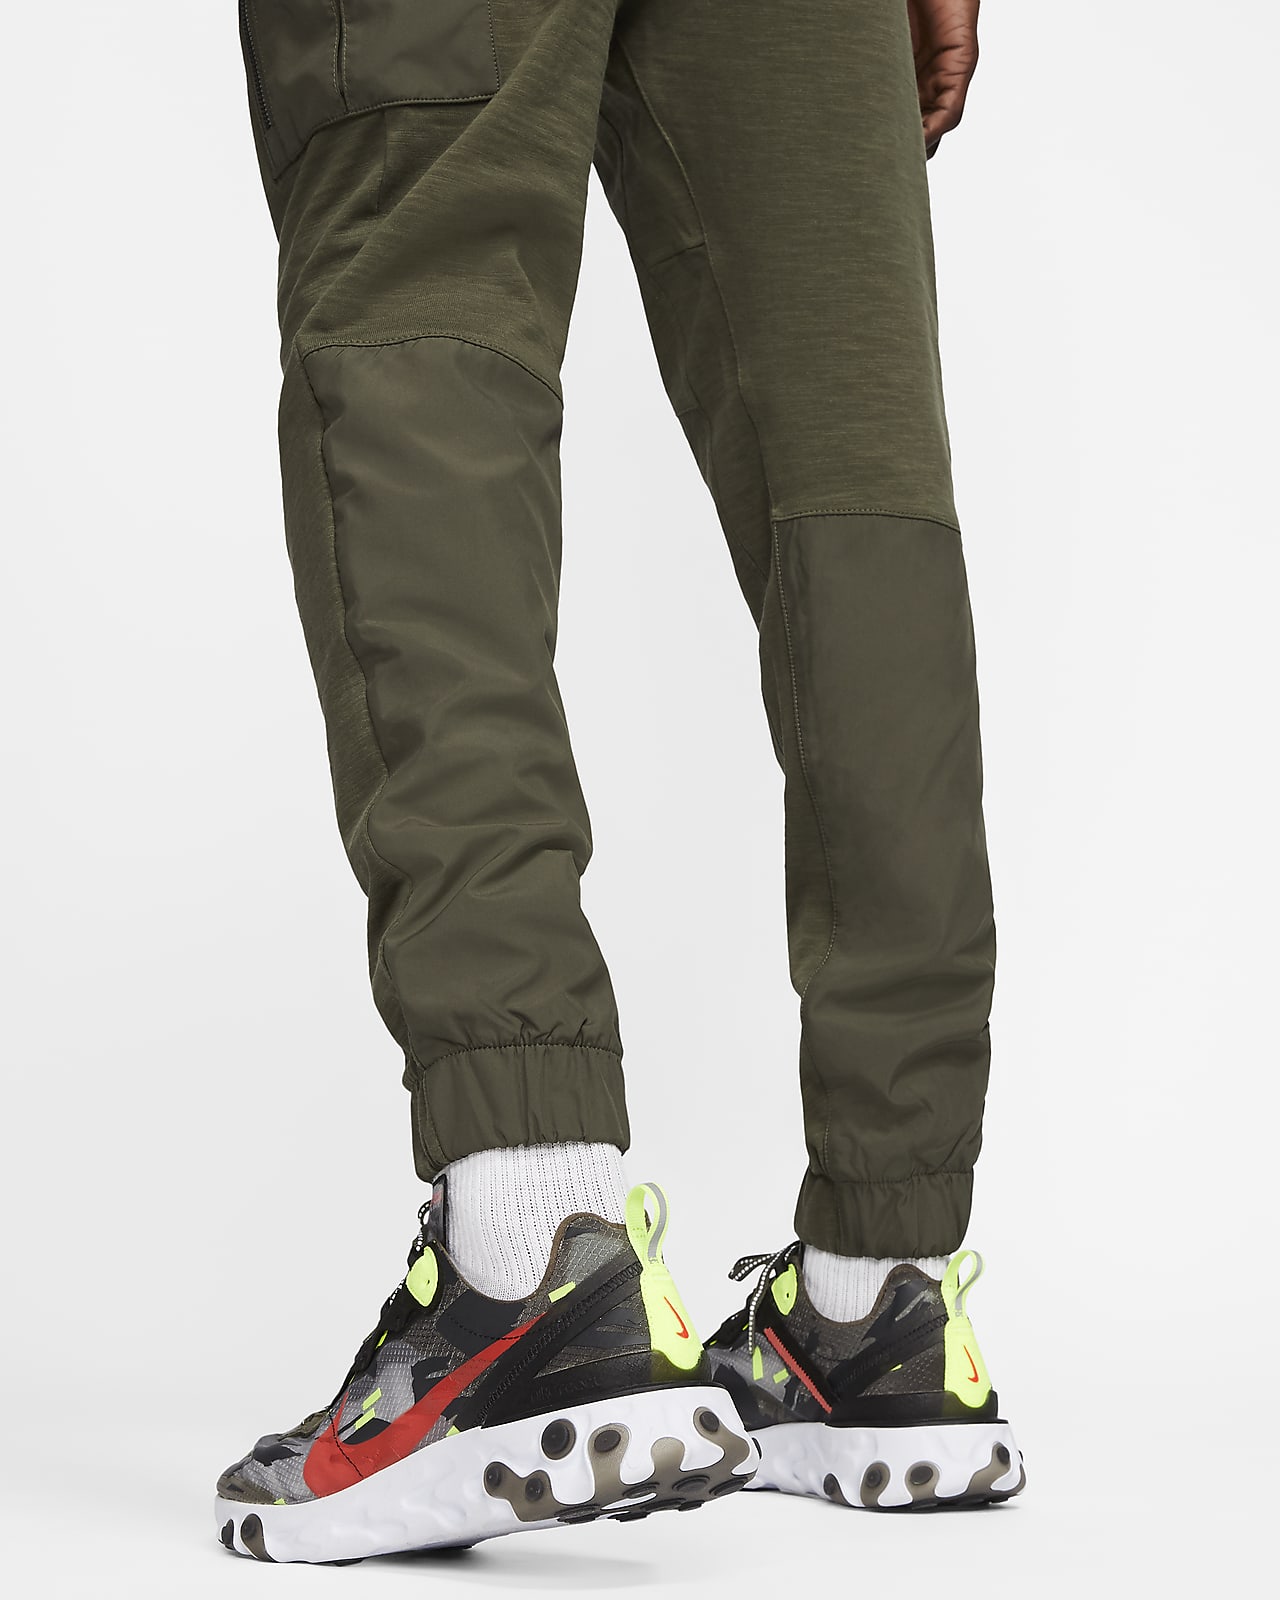 Nike Sportswear Men's Trousers. Nike LU